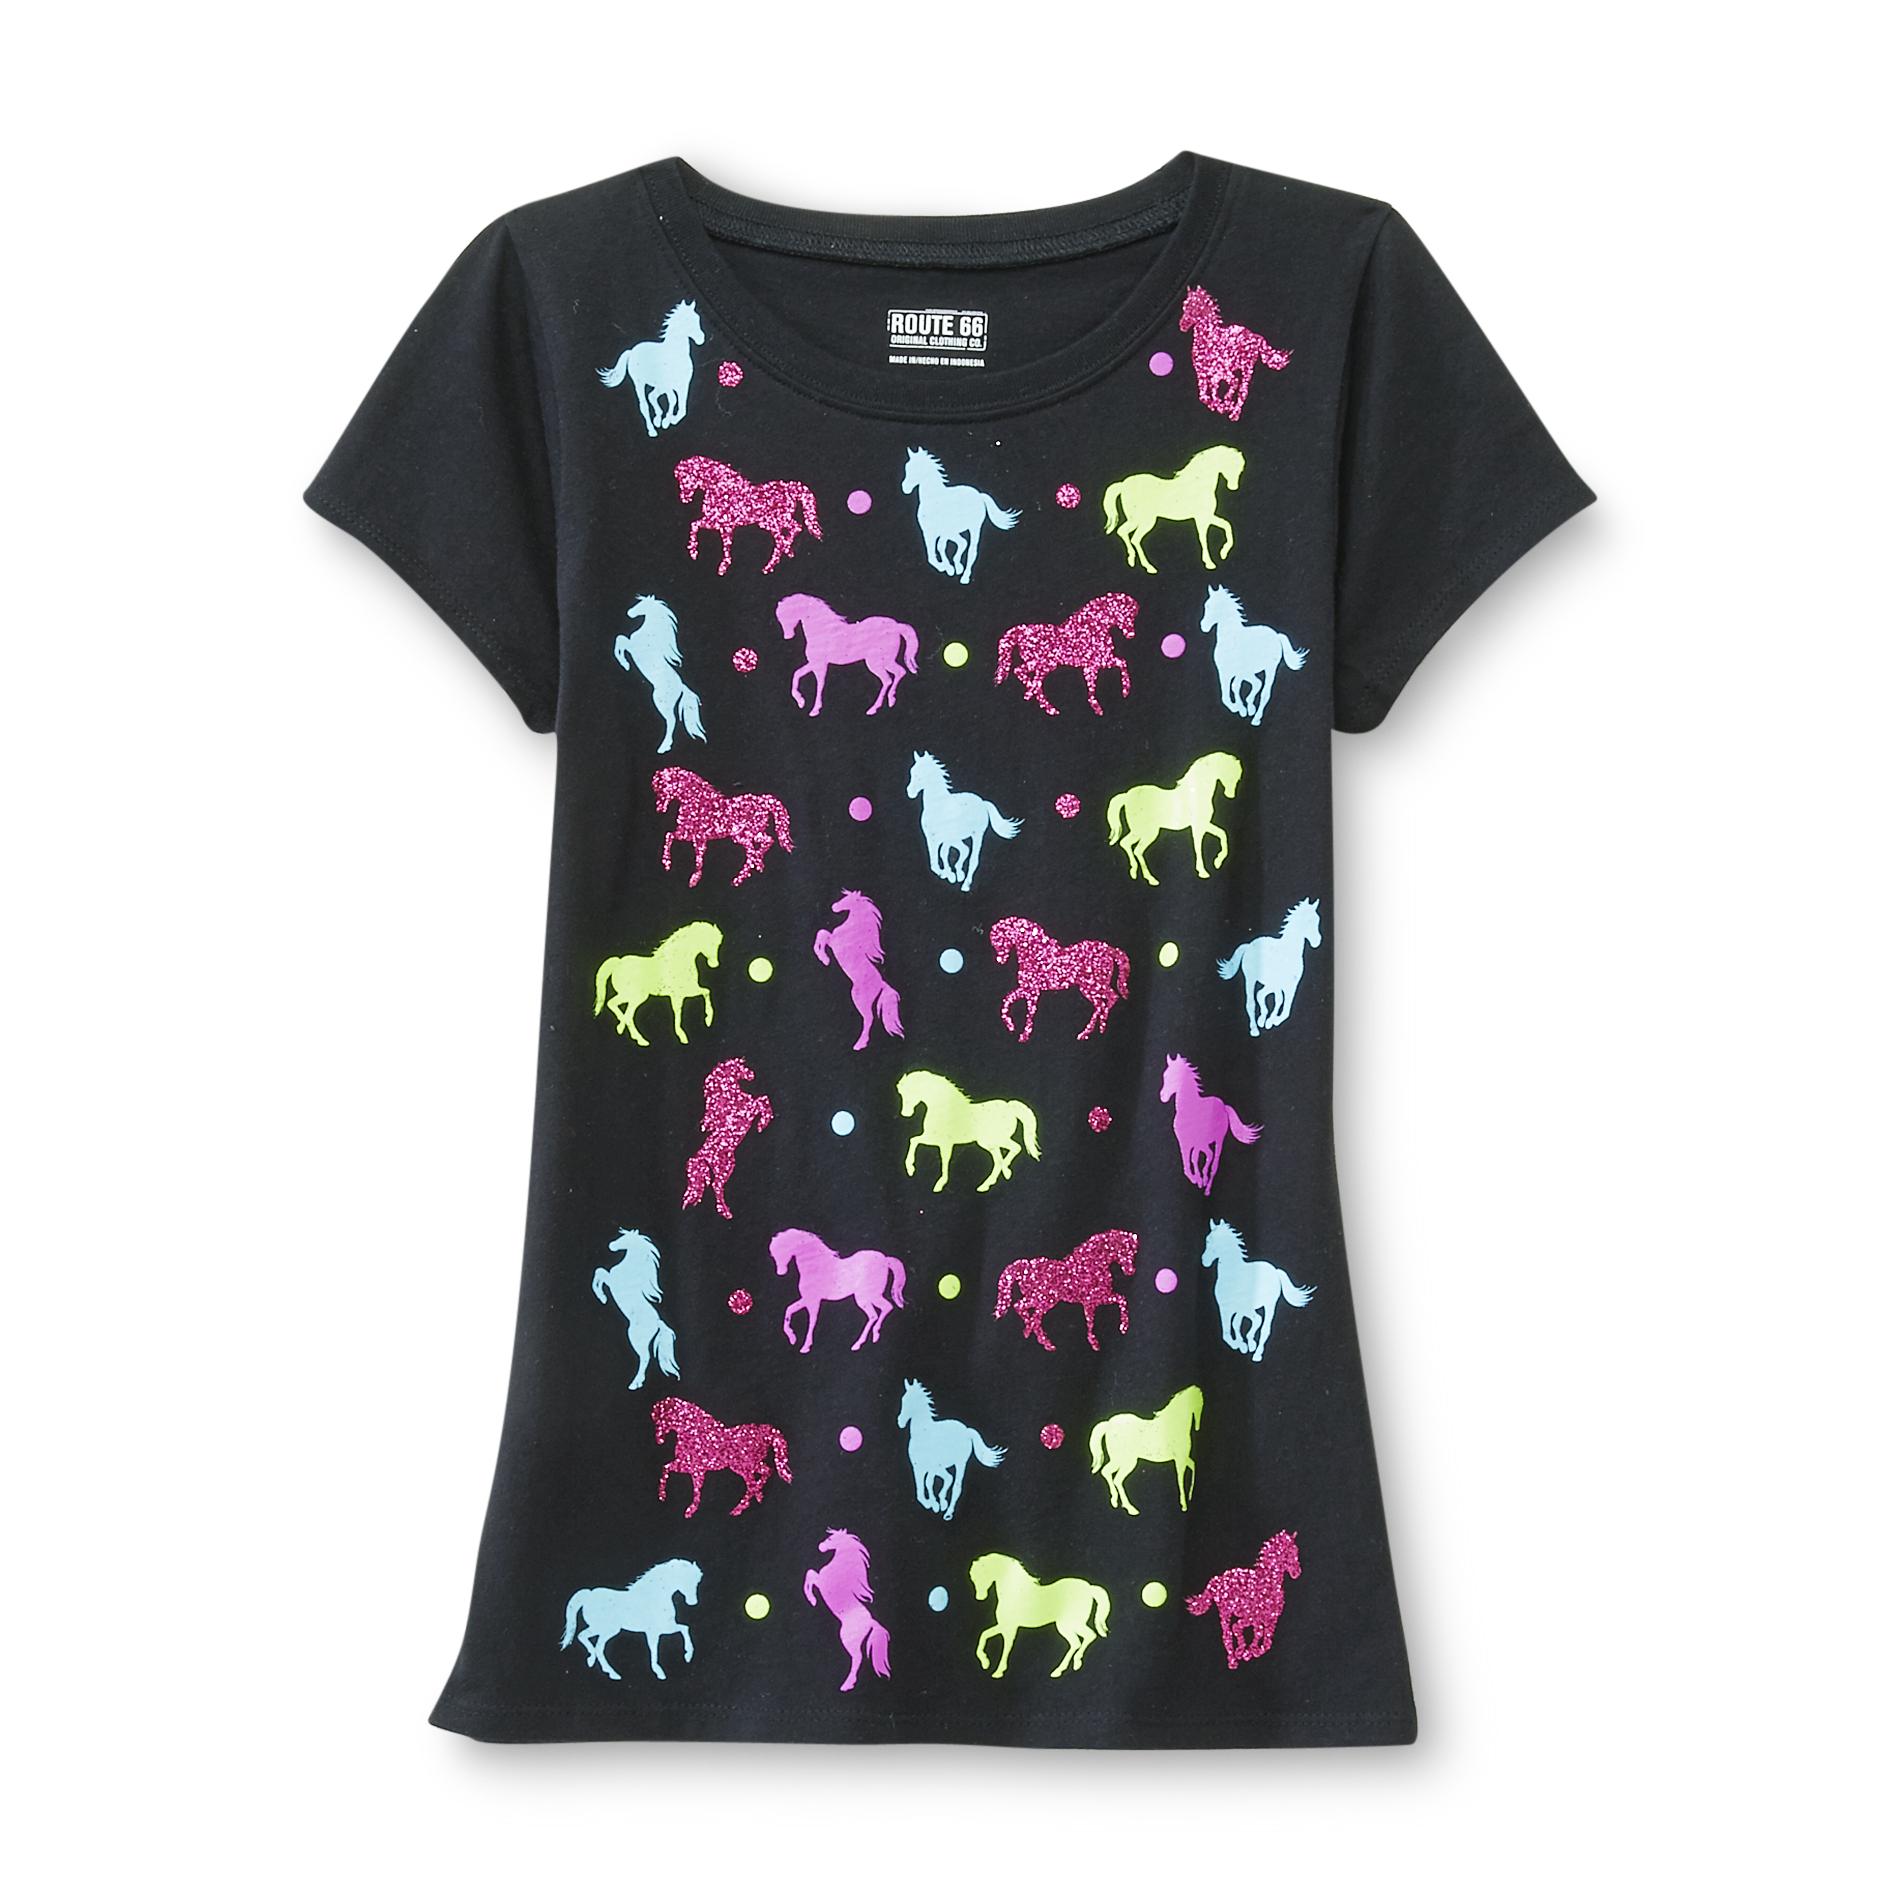 Route 66 Girl's Glitter Detail T-Shirt - Horses